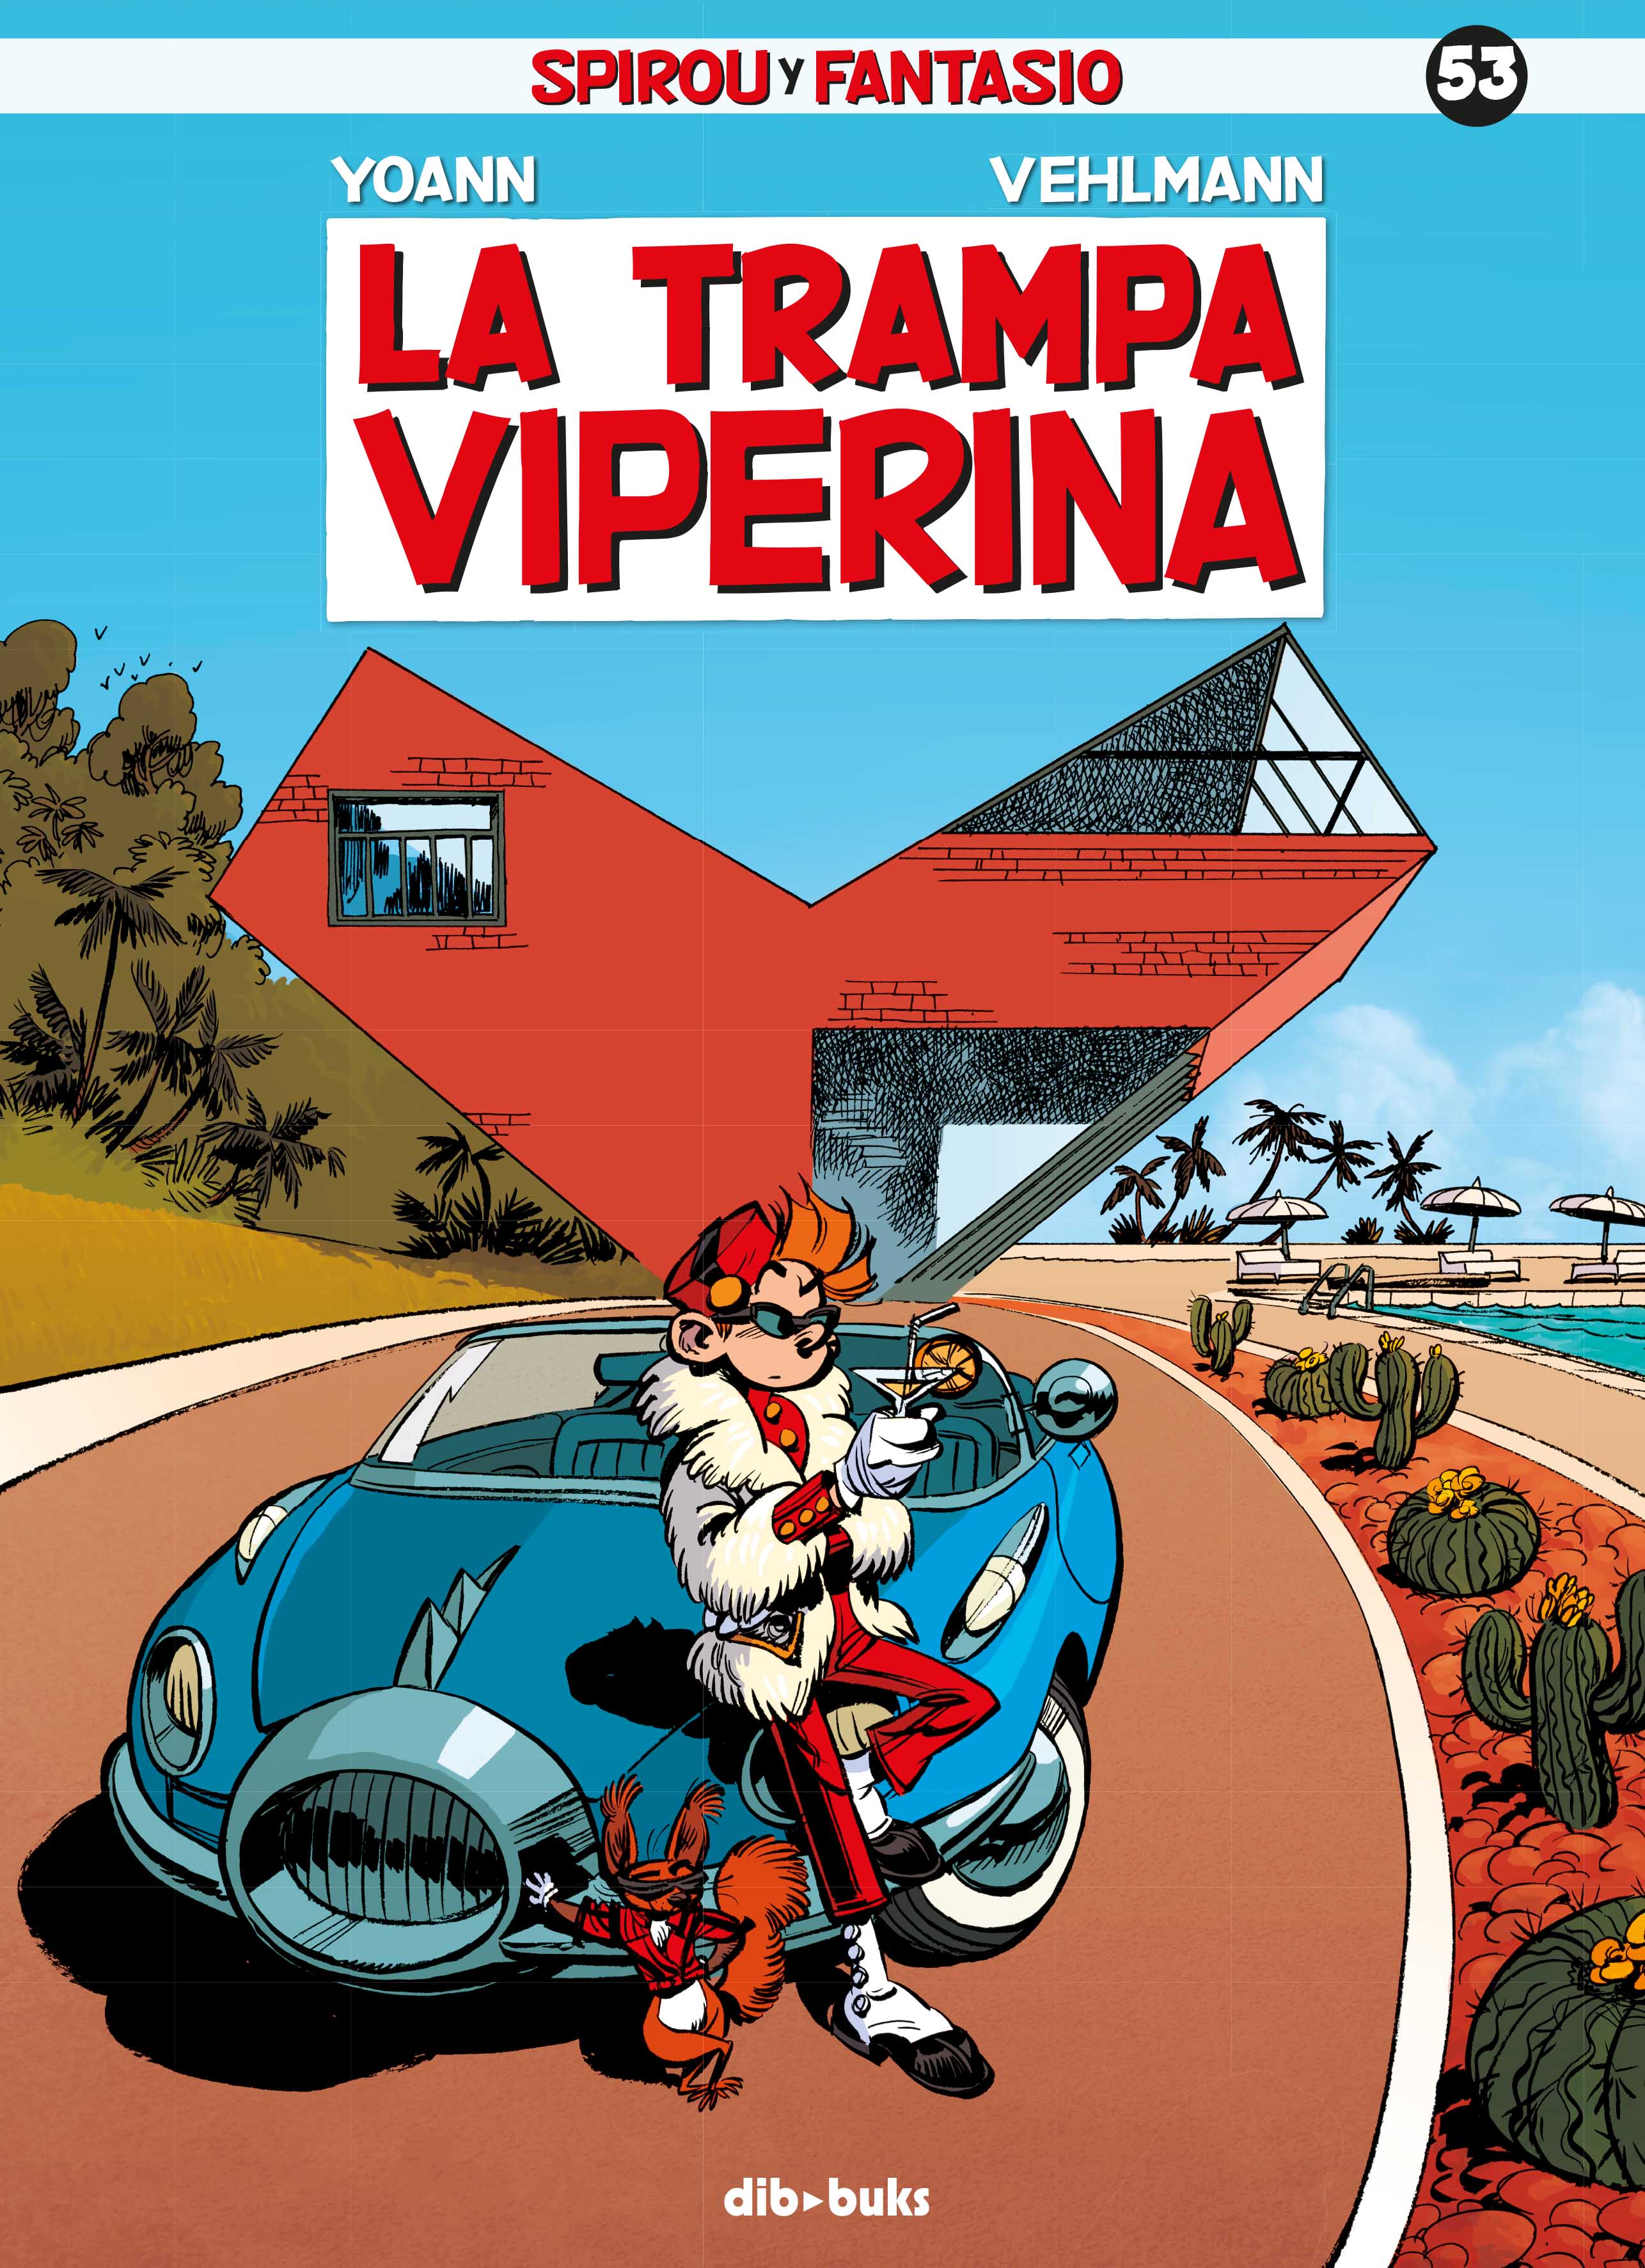 Spirou y Fantasio 53 «La trampa viperina» (9788416507511)